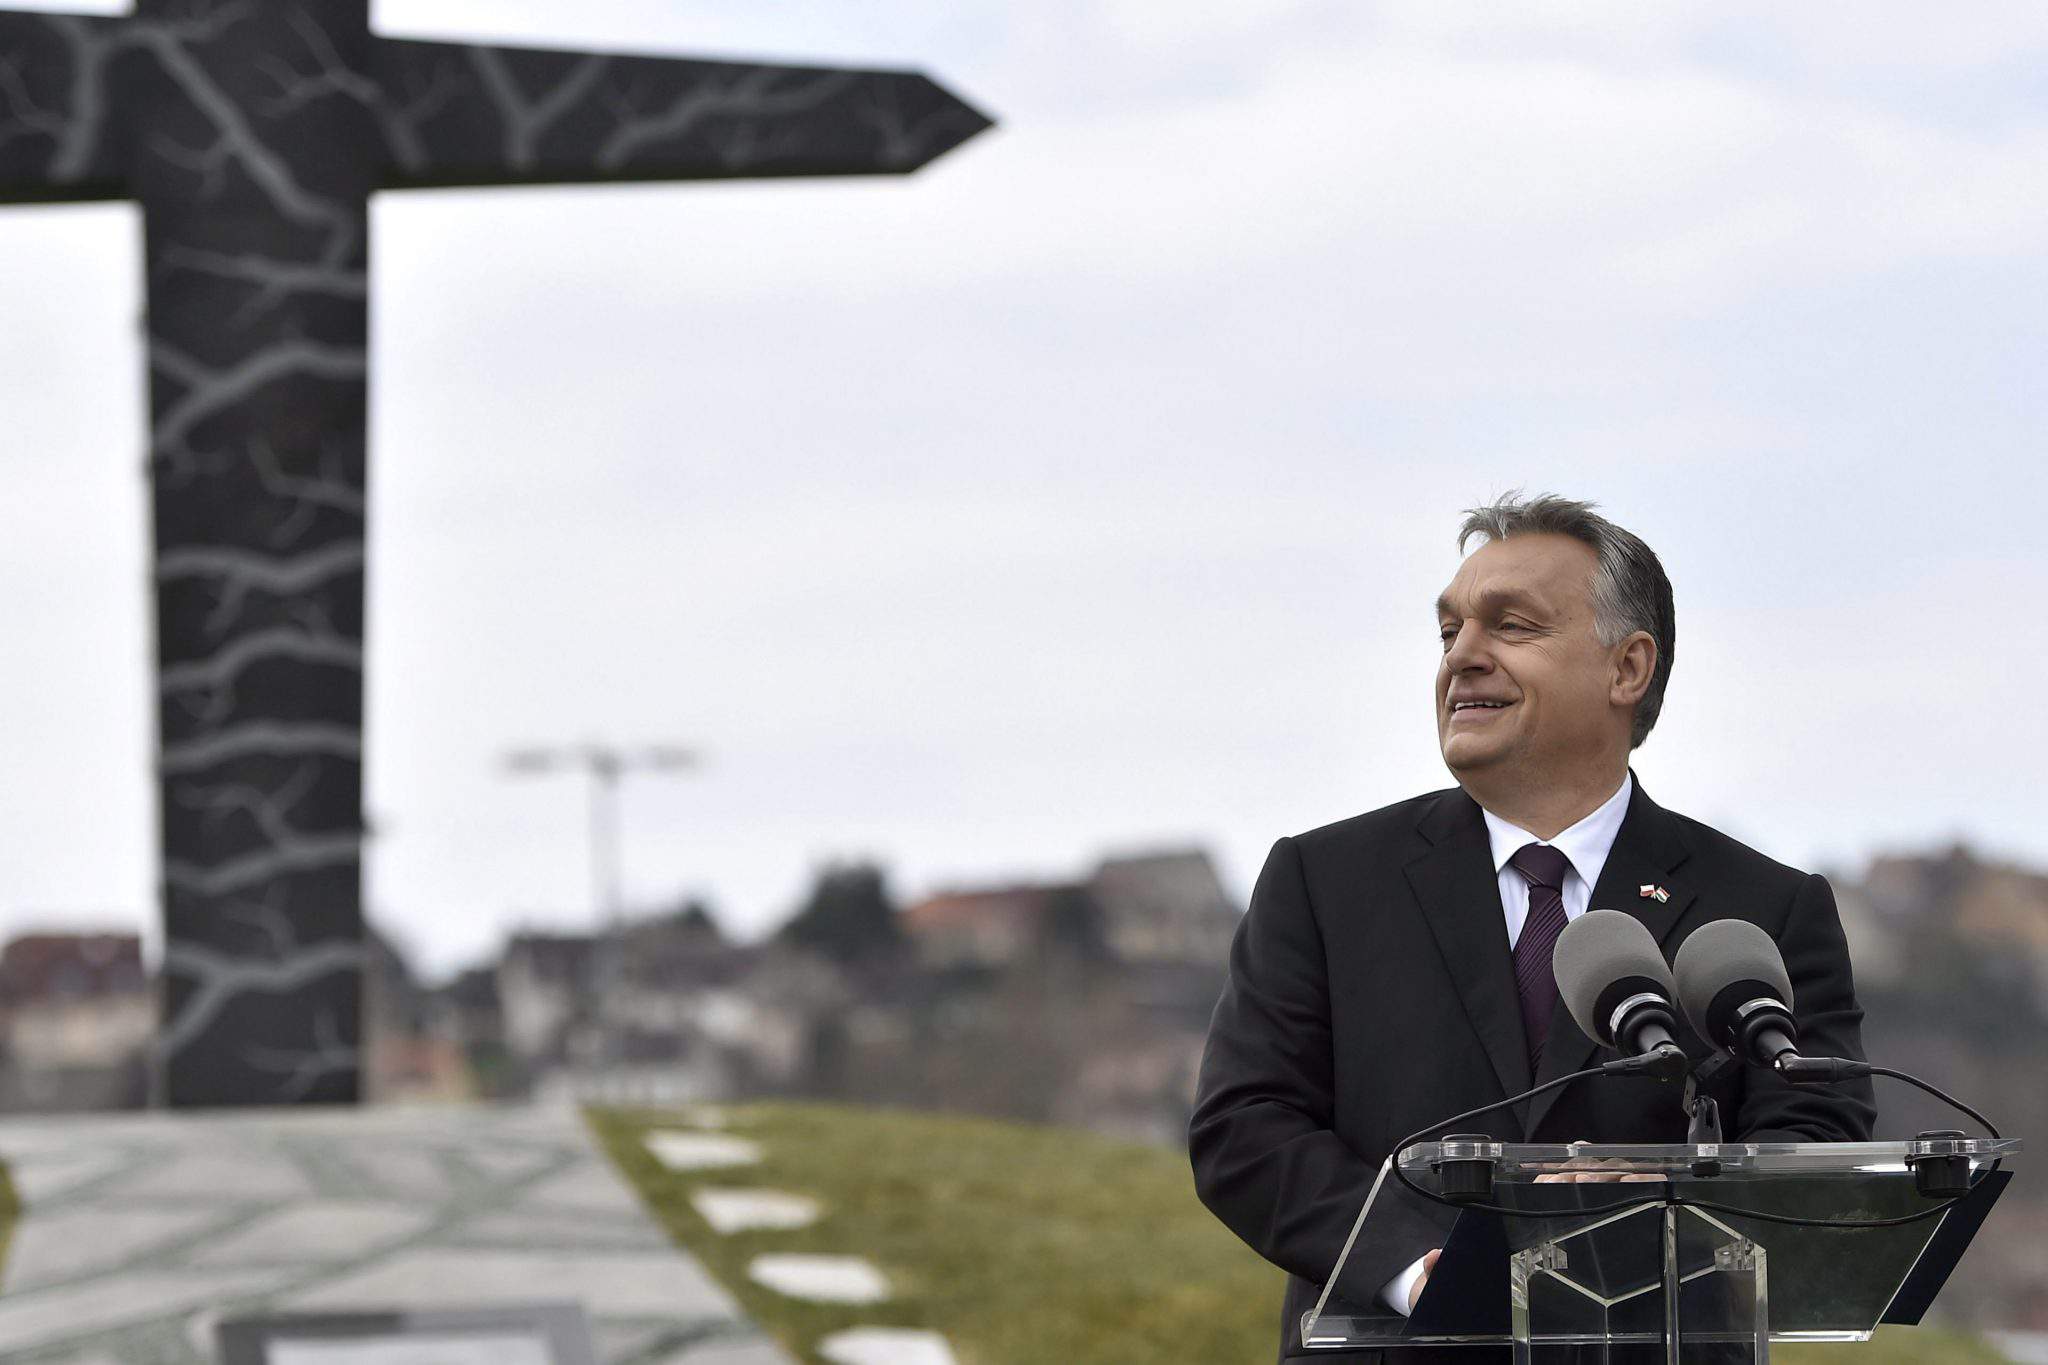 أوربان فيكتور رئيس الوزراء المجر بولندا التذكاري البولندية سمولينسك